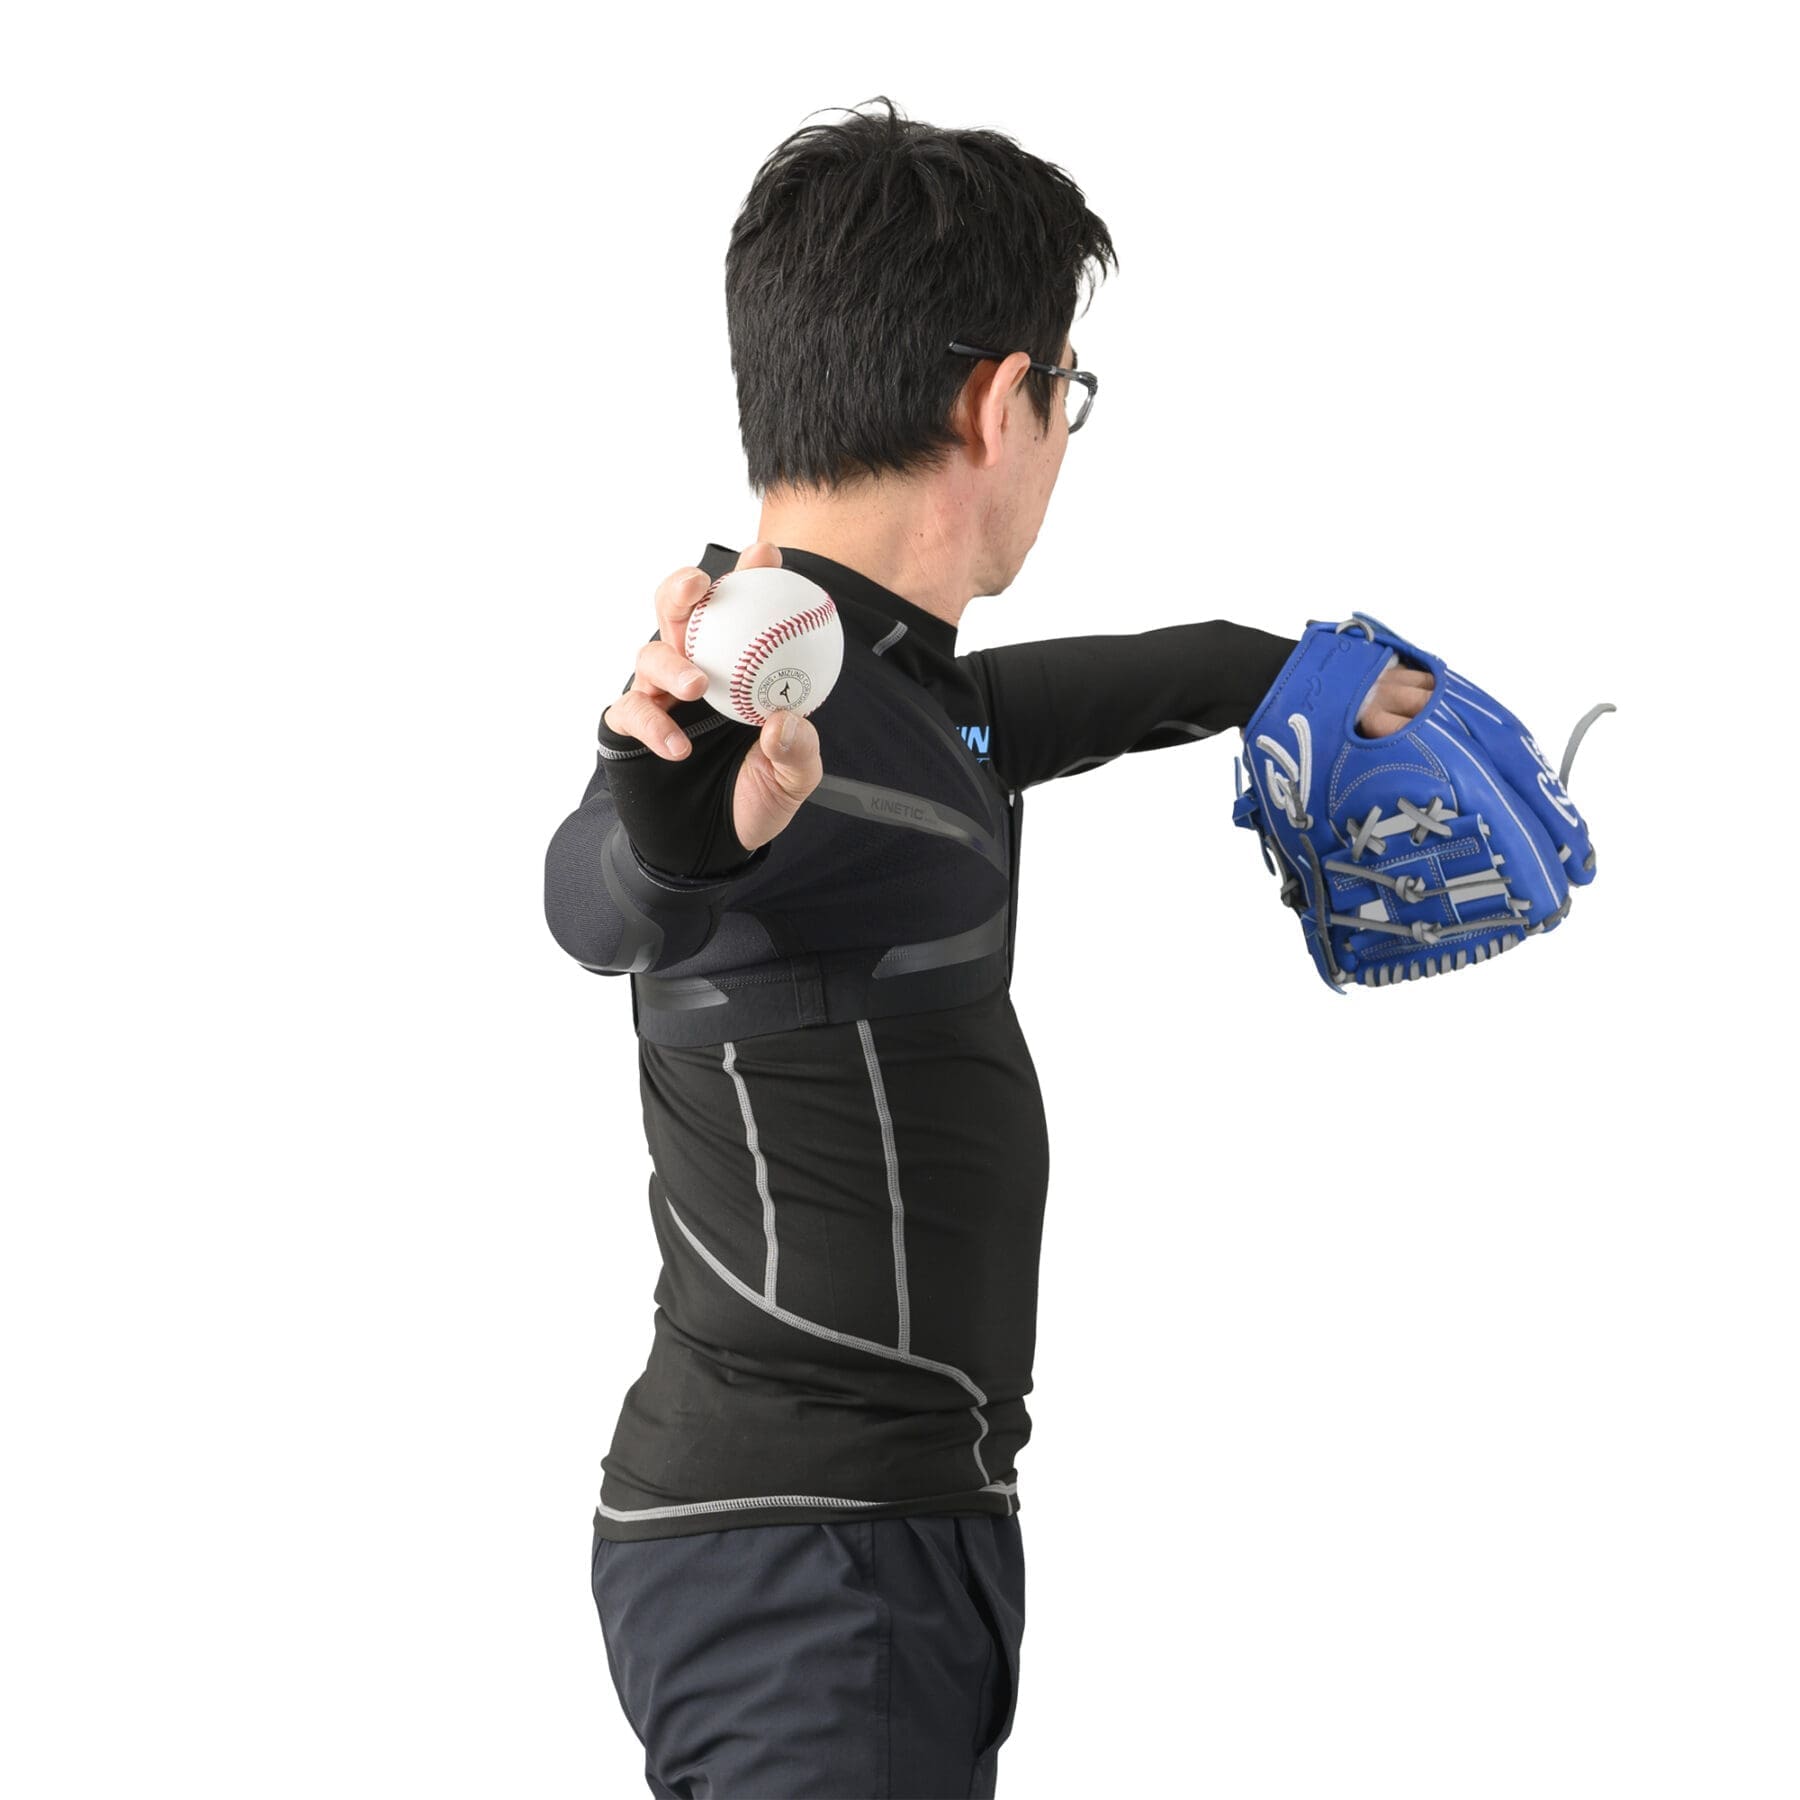 キネティックアーム・K2モデル – RHK Trading – 野球トレーニング用品